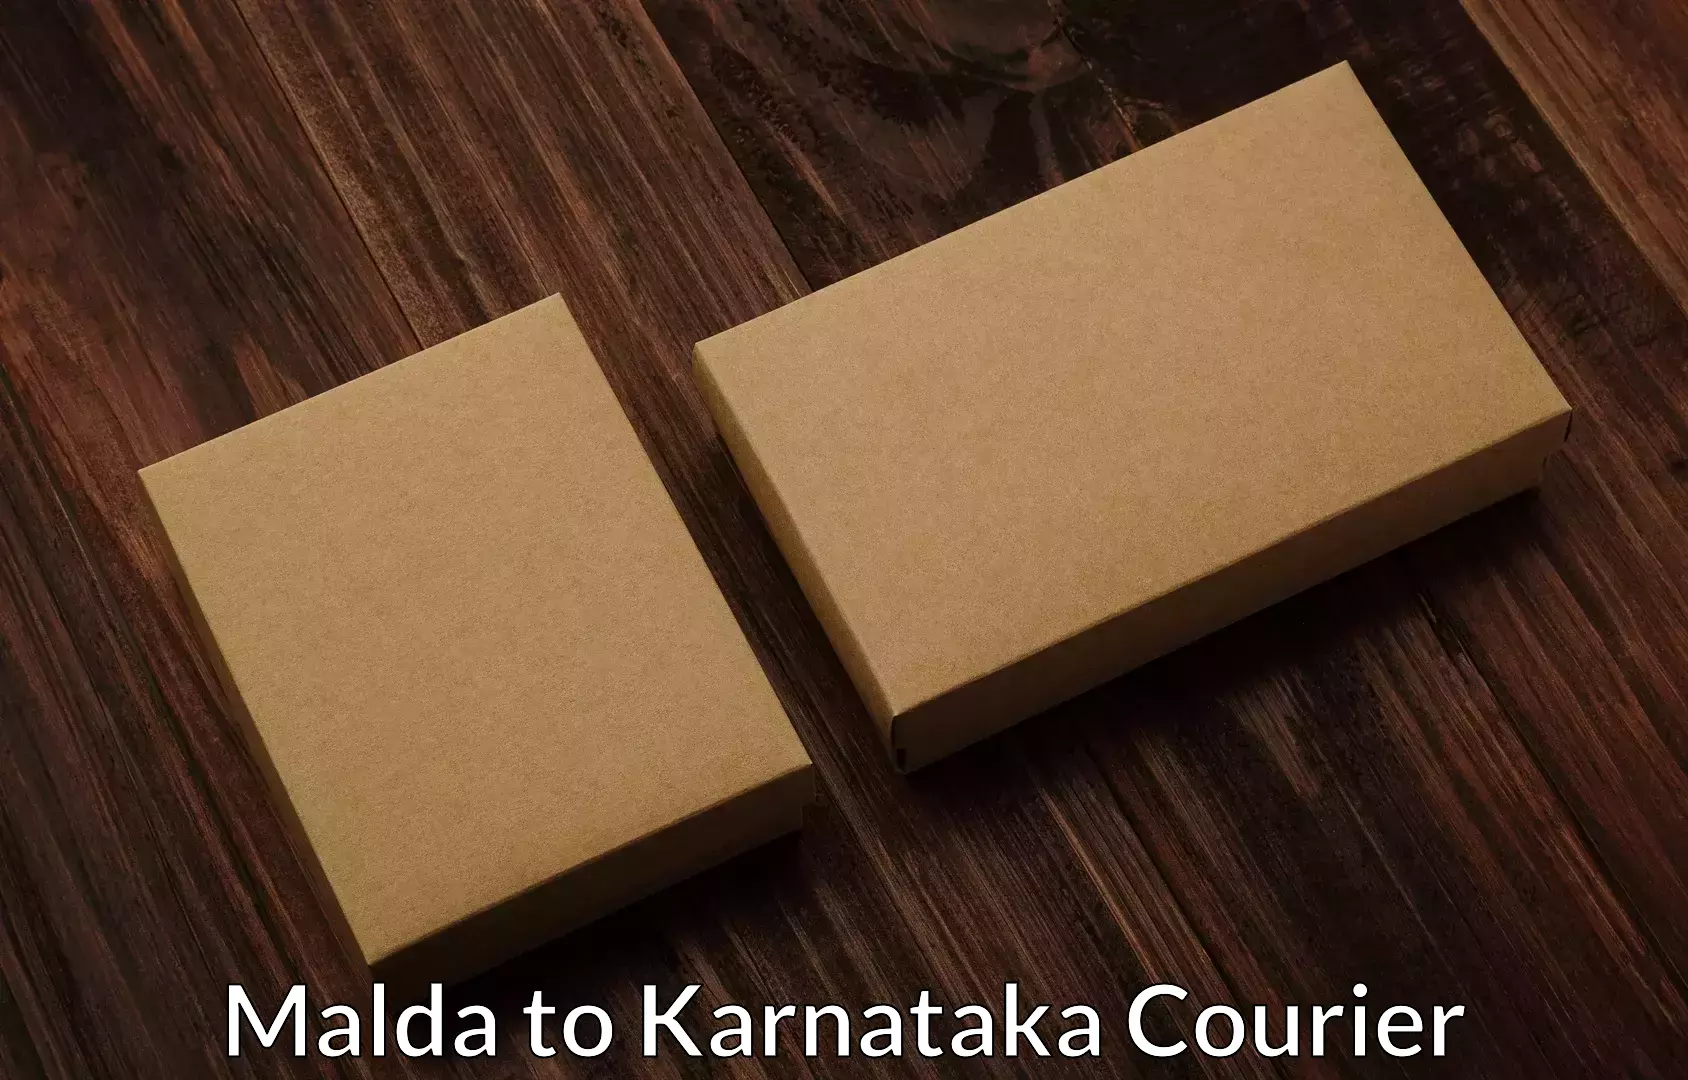 Expert goods movers Malda to Karnataka